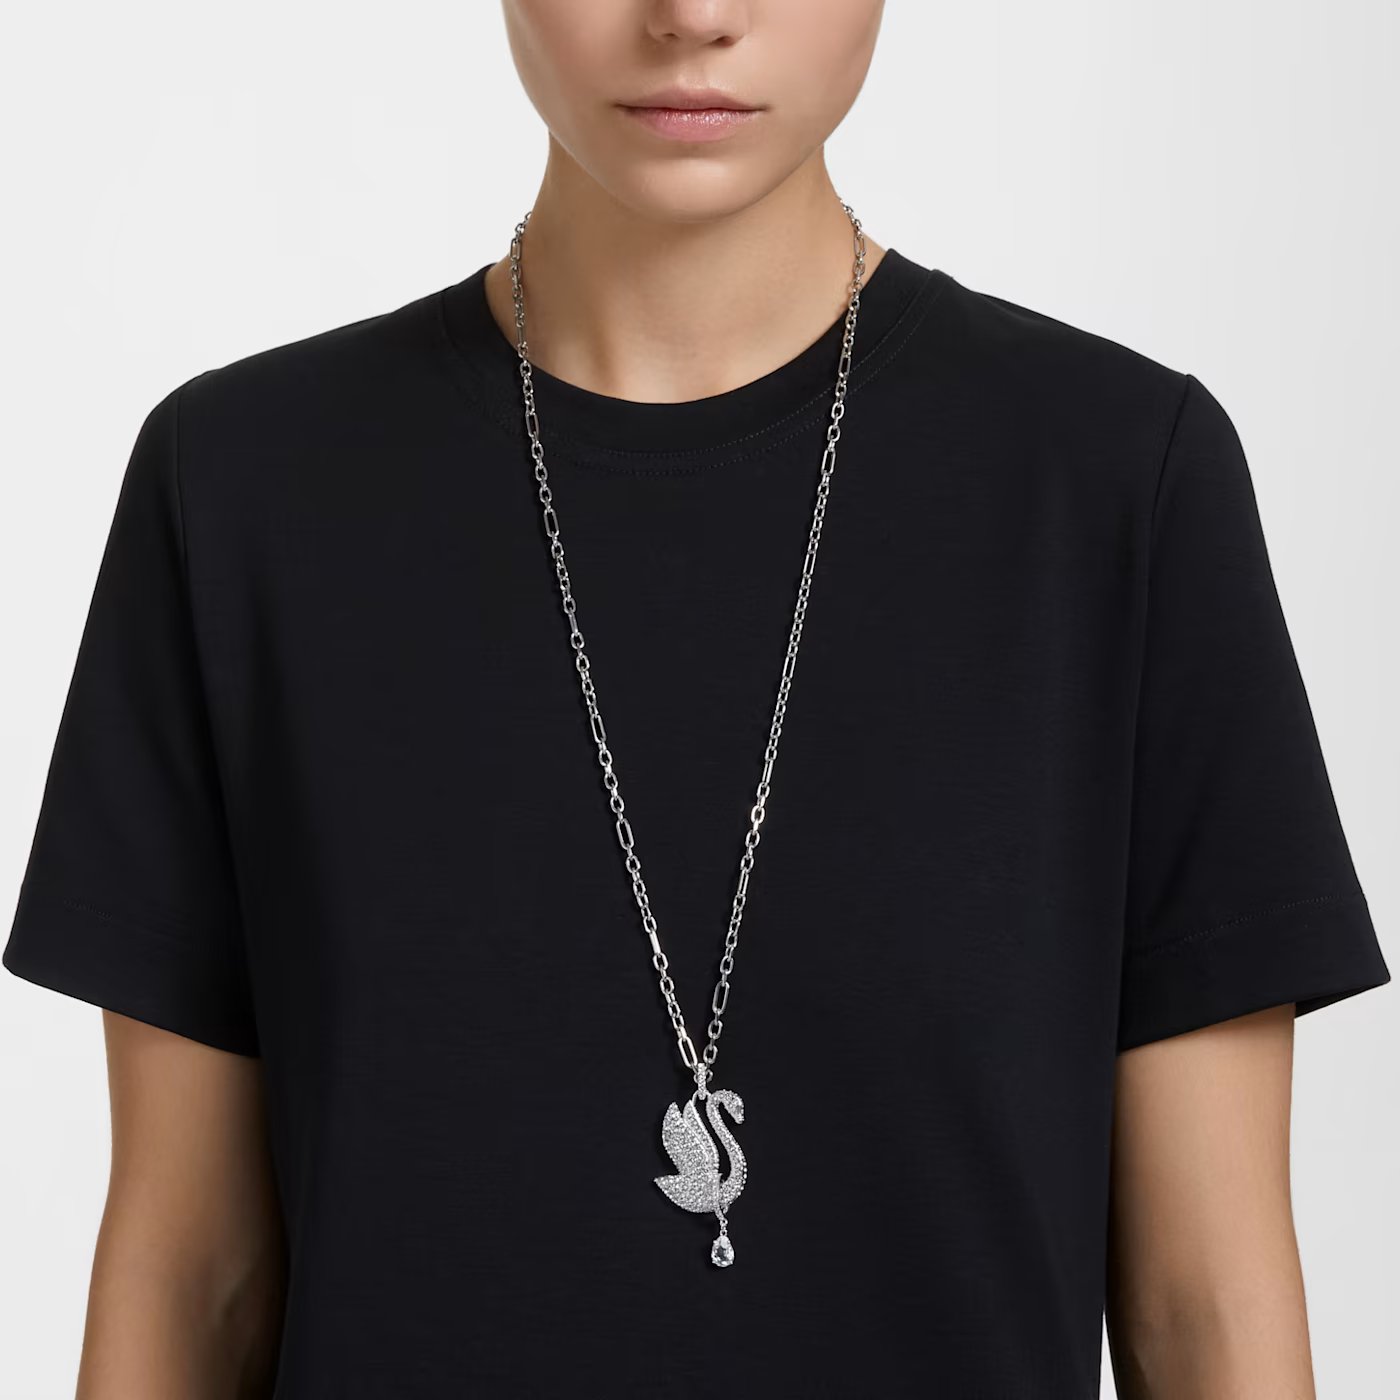 Swarovski Iconic Swan necklace